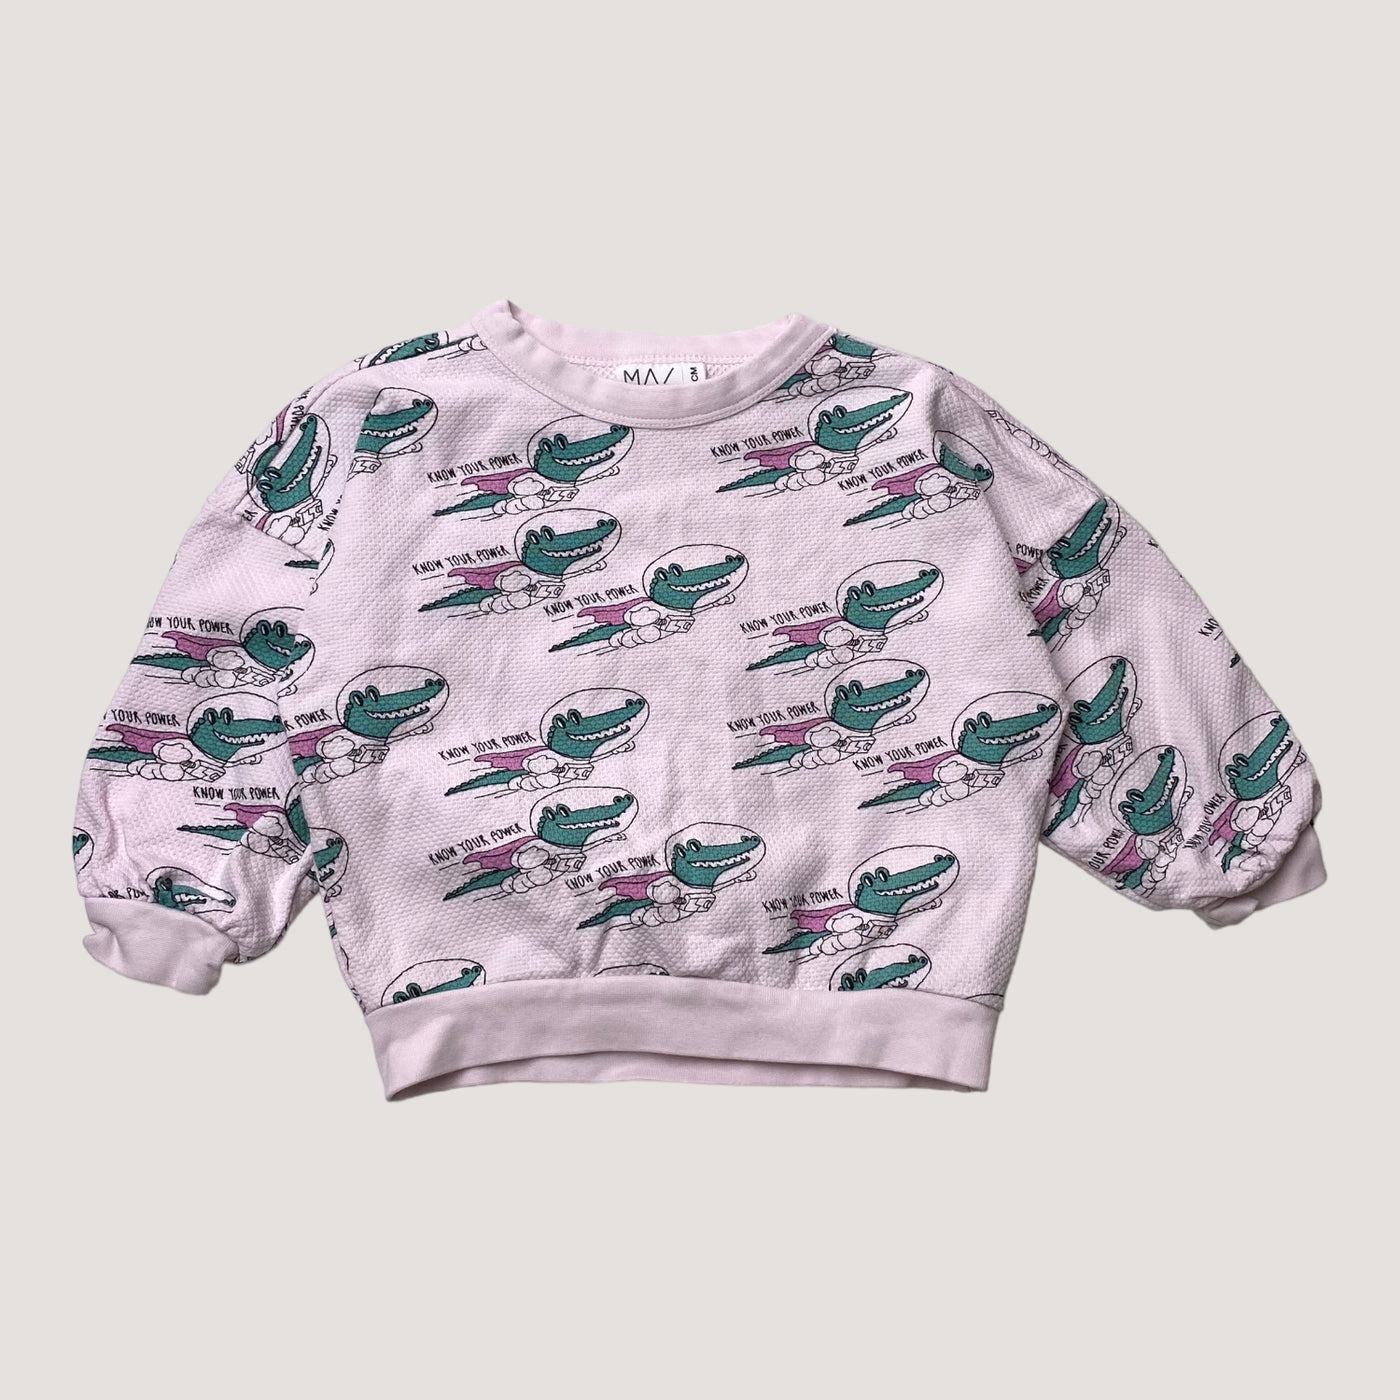 Mainio sweatshirt, crocodile | 86/92cm